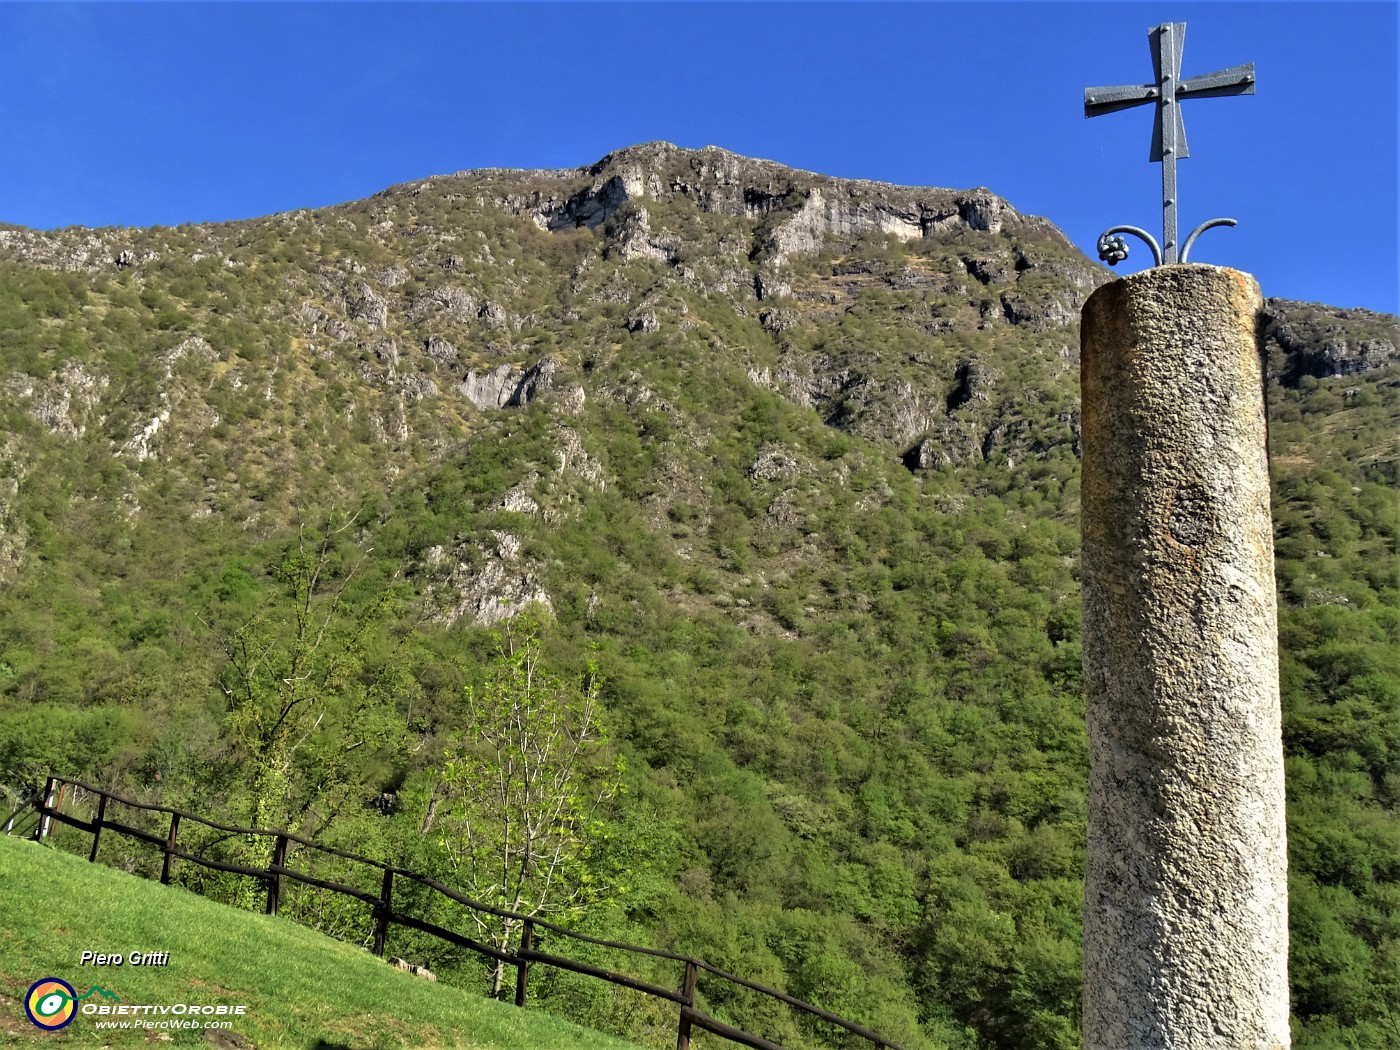 33 Croce su colonna con vista sui contrafforti del Monte Rai.JPG